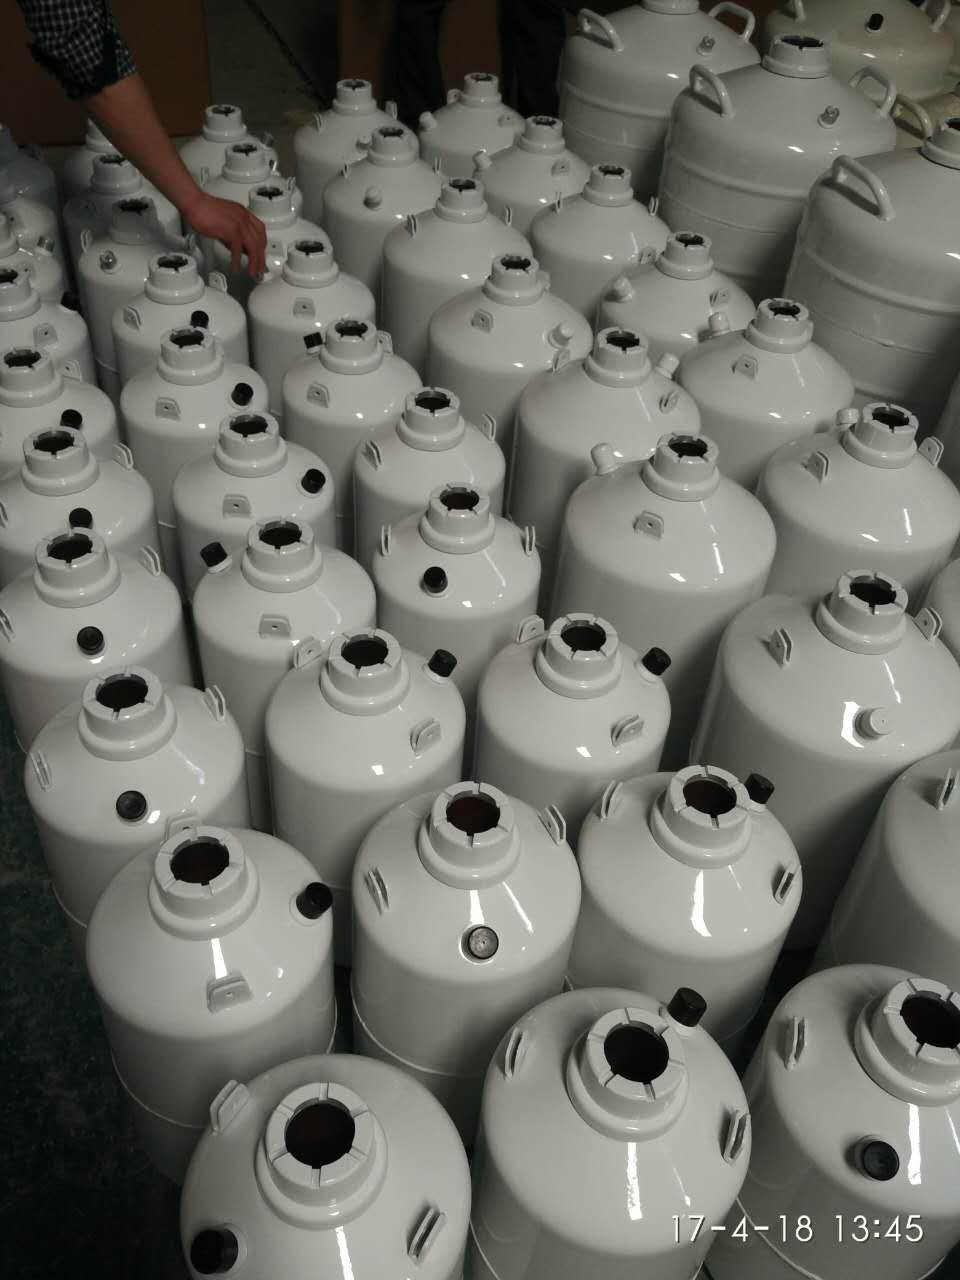 石嘴山液氮储存罐10升价格YDS-10